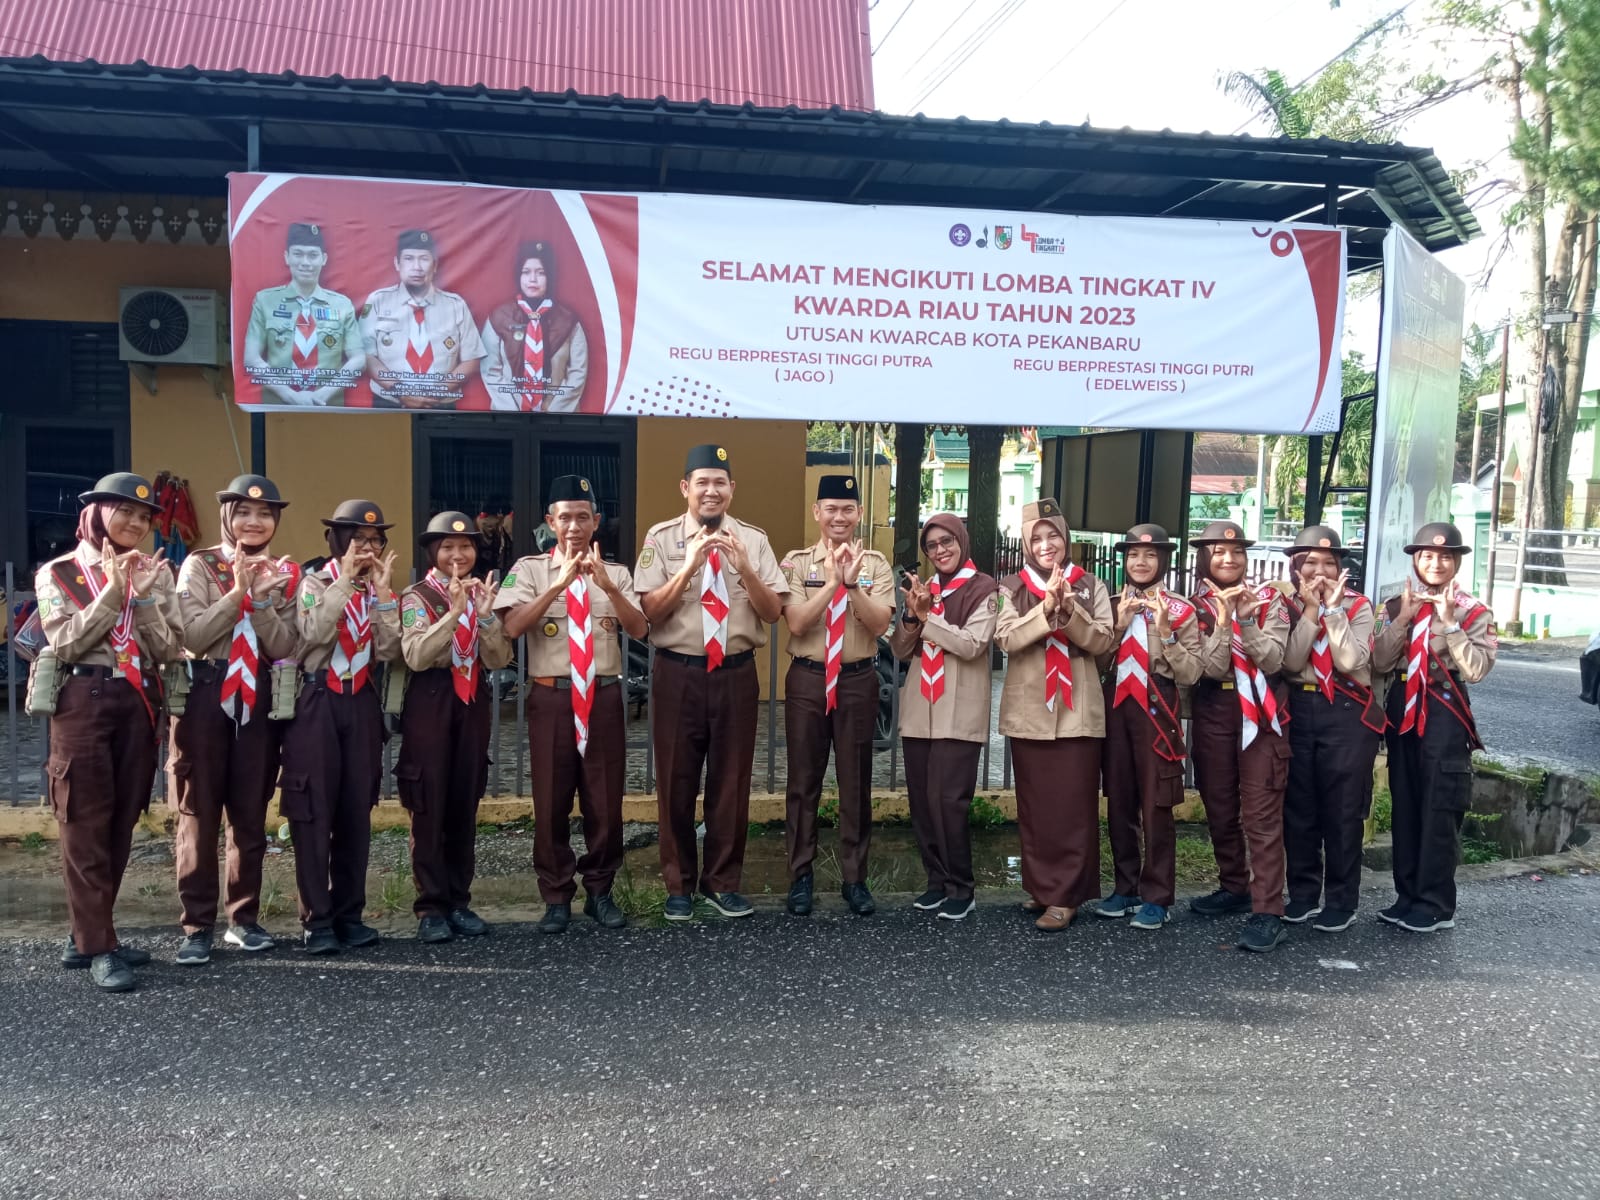 Klasmen Sementara LT-IV Kwarda Riau, Regu Putri Kwarcab Pekanbaru Terbaik 2